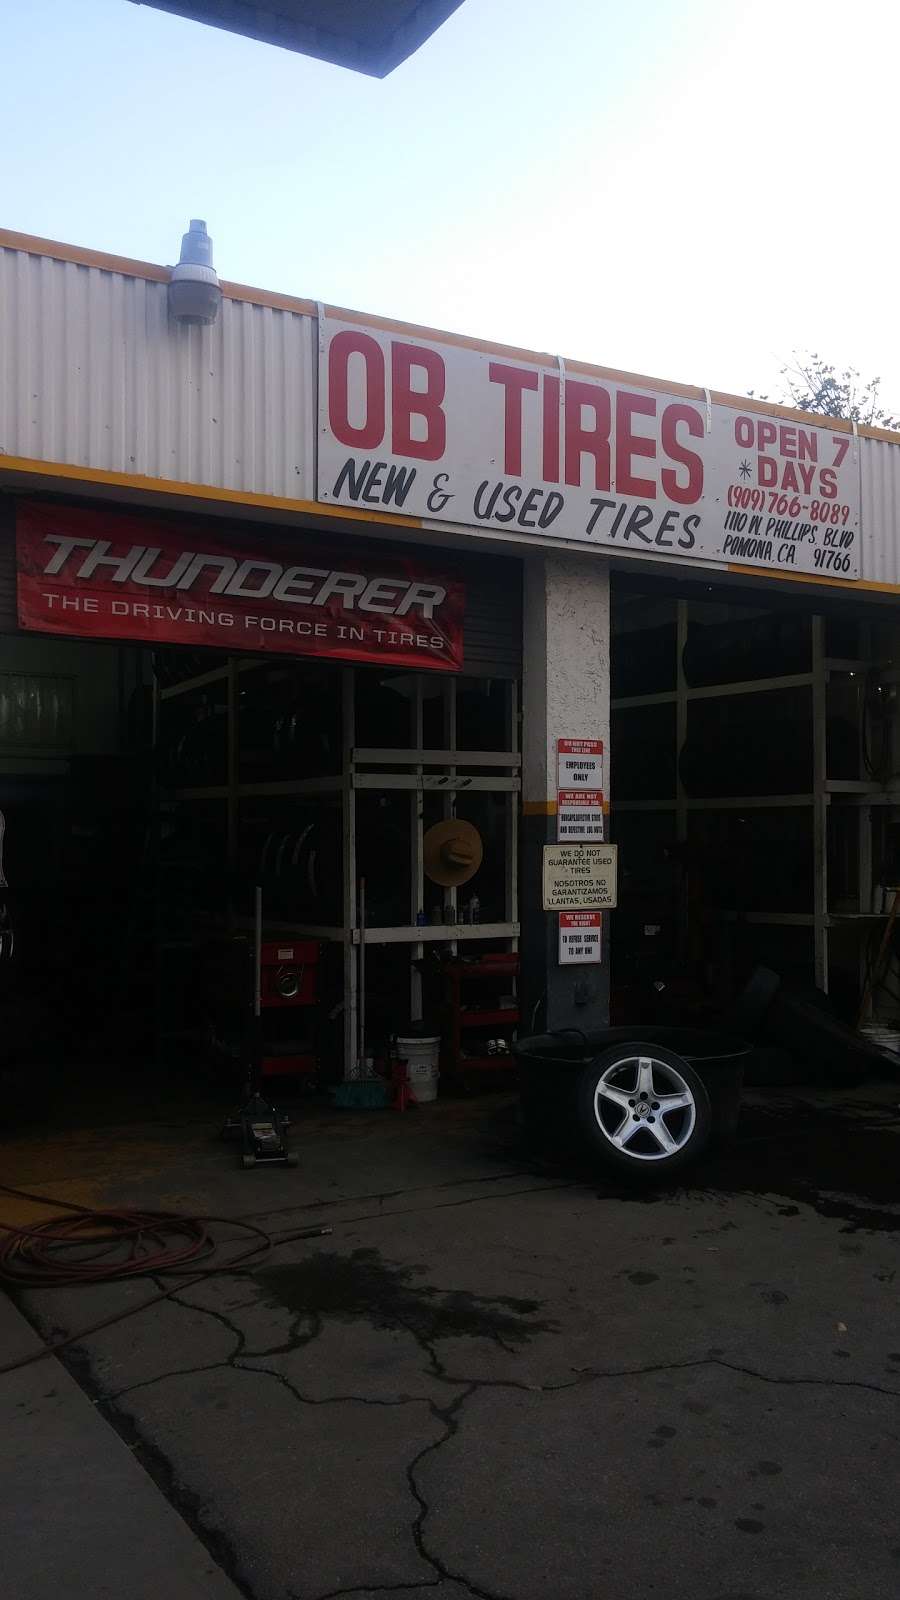 OB Tires | 1110 W Phillips Blvd, Pomona, CA 91766 | Phone: (909) 766-8089